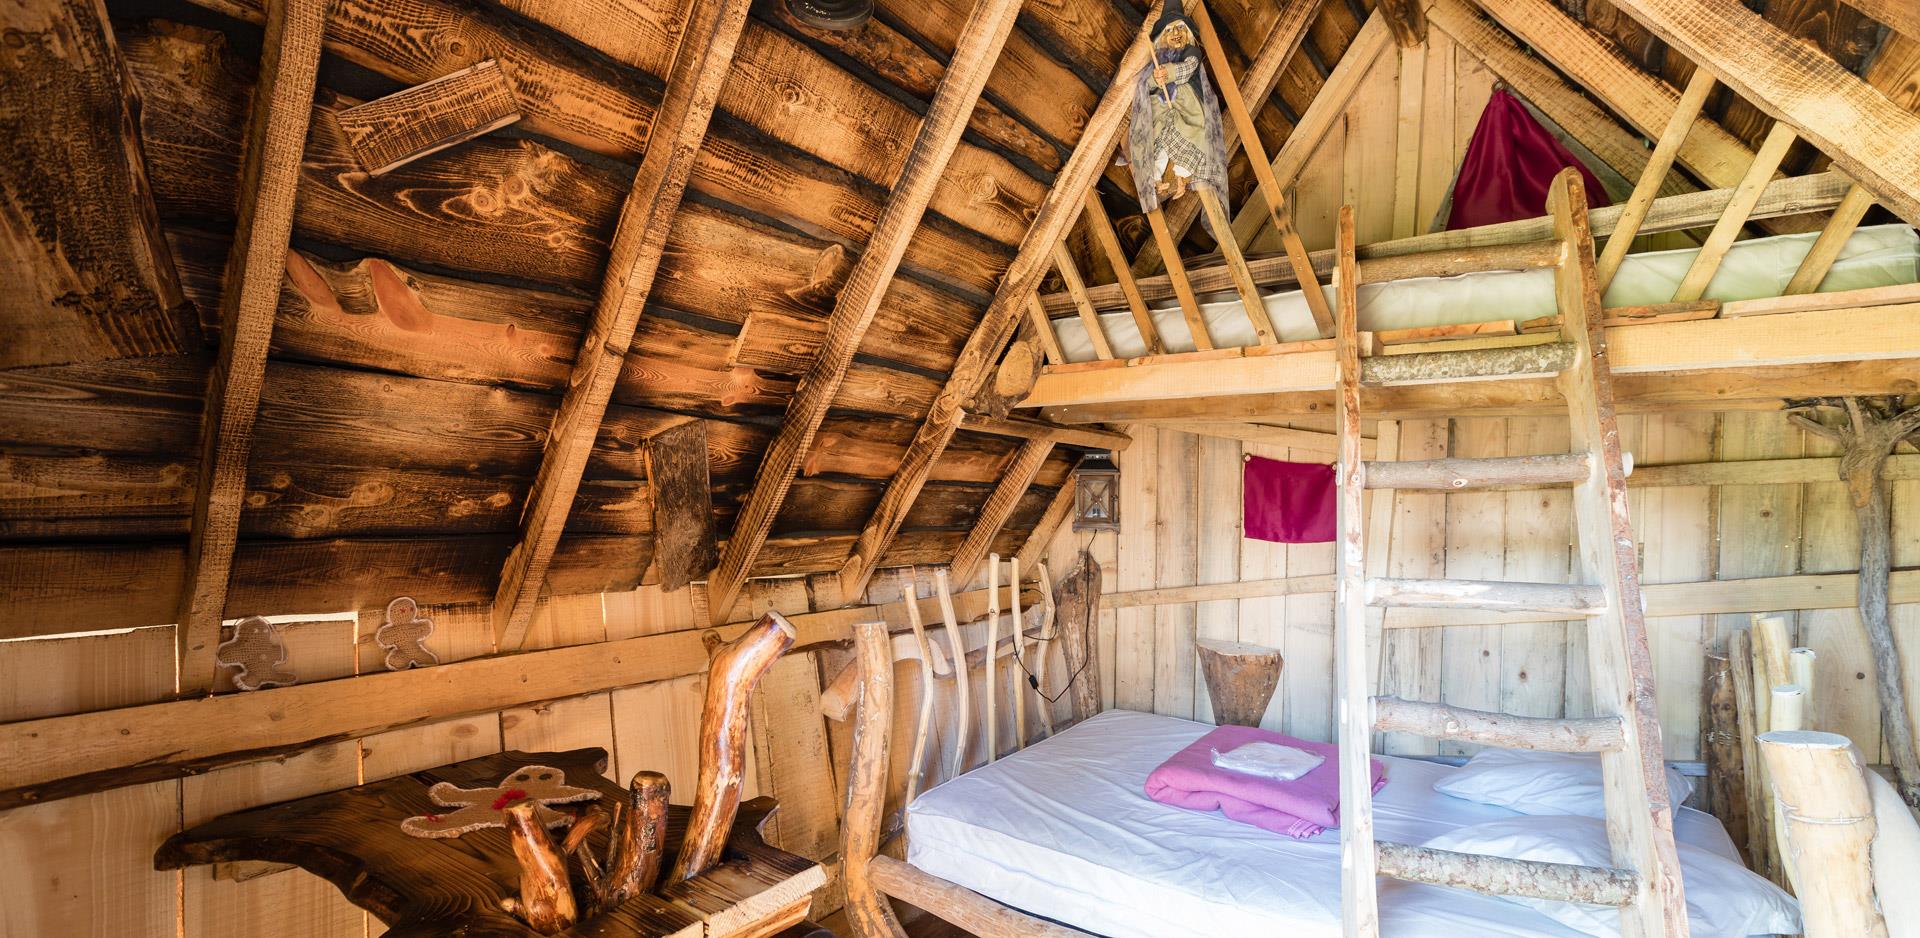 Location d'hébergements insolites dans les Vosges : vue d'un coin chambre d'une cabane insolite